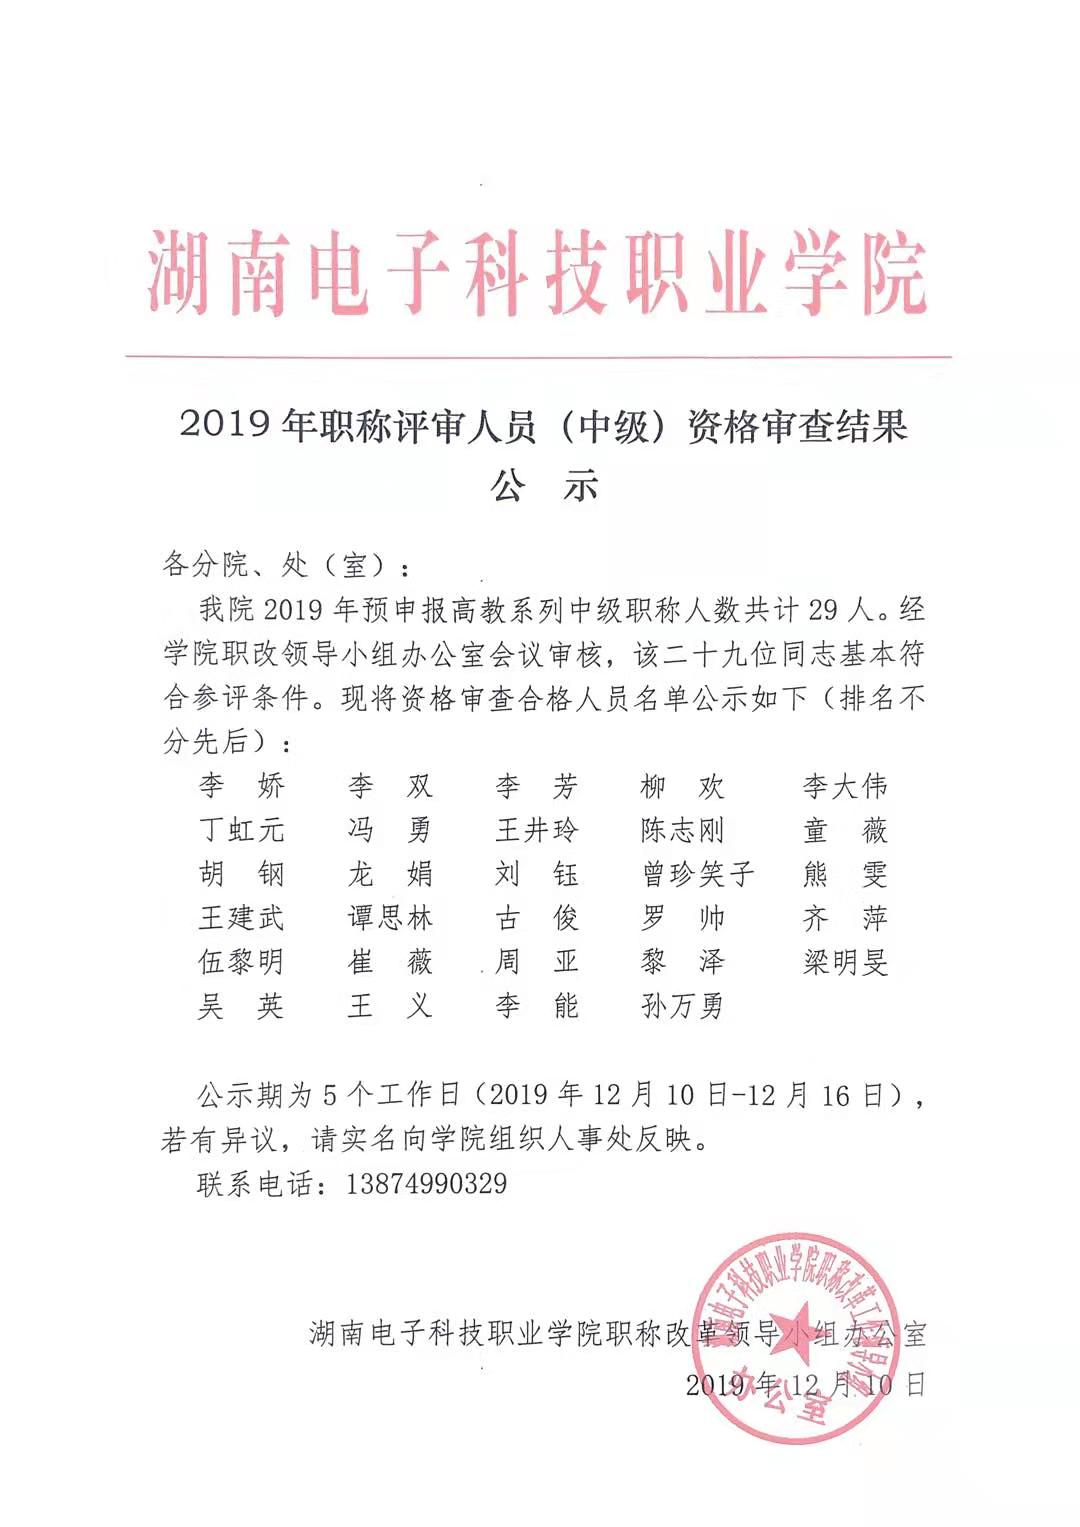 湖南電子科技職業學院2019年職稱評審人員（中級）資格審查結果公示